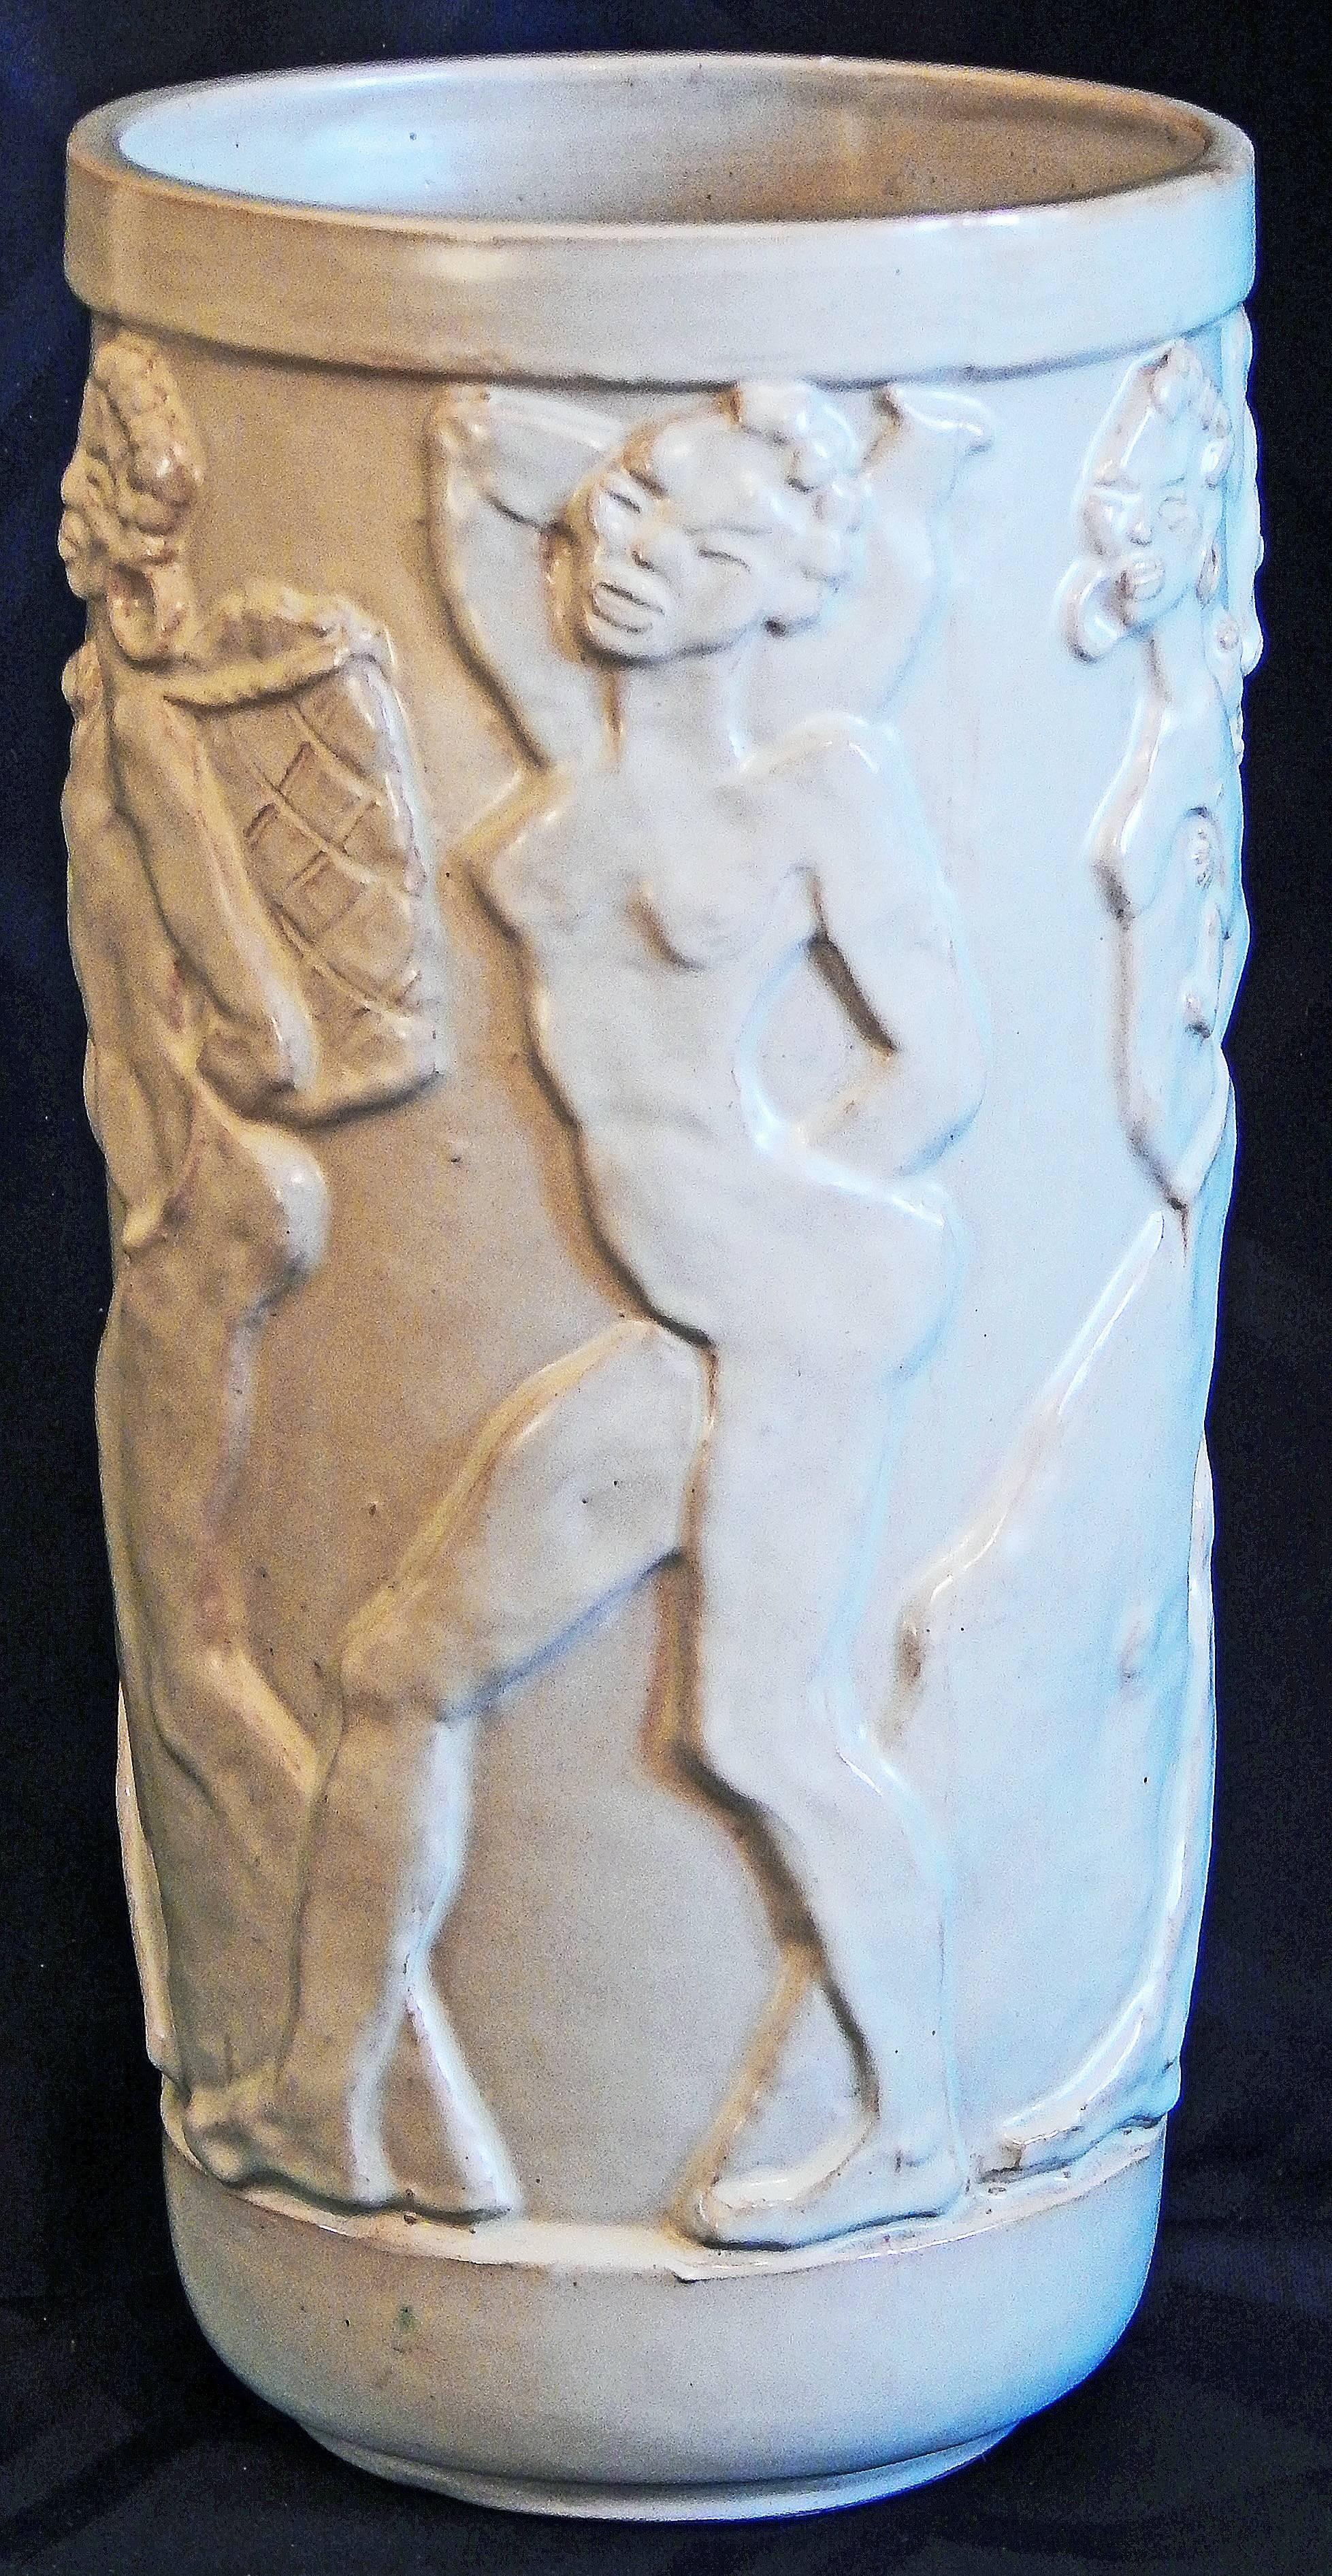 Questo eccezionale vaso scolpito in bassorilievo da Allan Ebeling per Steninge Keramik in Svezia raffigura una processione a fregio di sei donne africane nude che trasportano qualsiasi cosa, da un bambino a un pesce. Ogni figura è catturata in modo